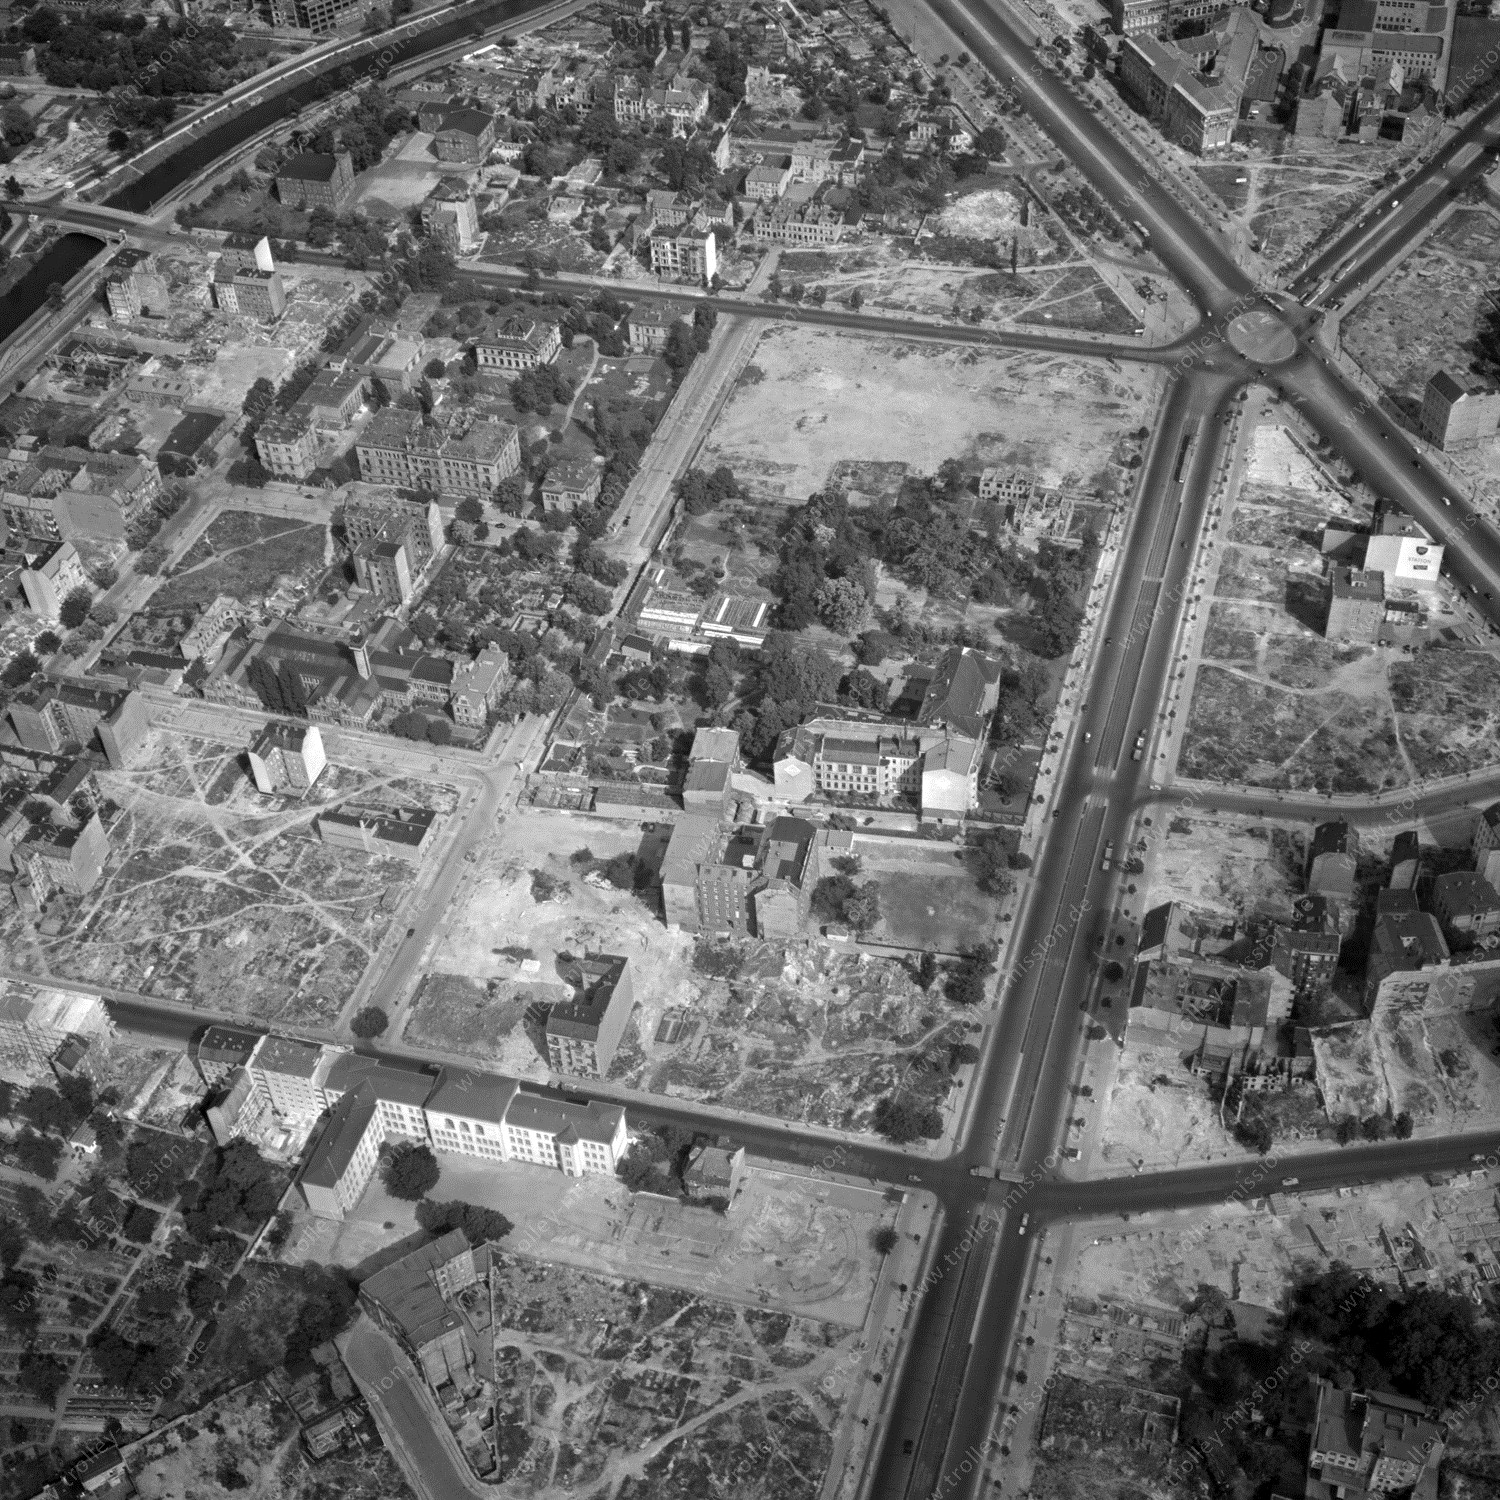 Alte Fotos und Luftbilder von Berlin - Luftbildaufnahme Nr. 06 - Historische Luftaufnahmen von West-Berlin aus dem Jahr 1954 - Flugstrecke Tango